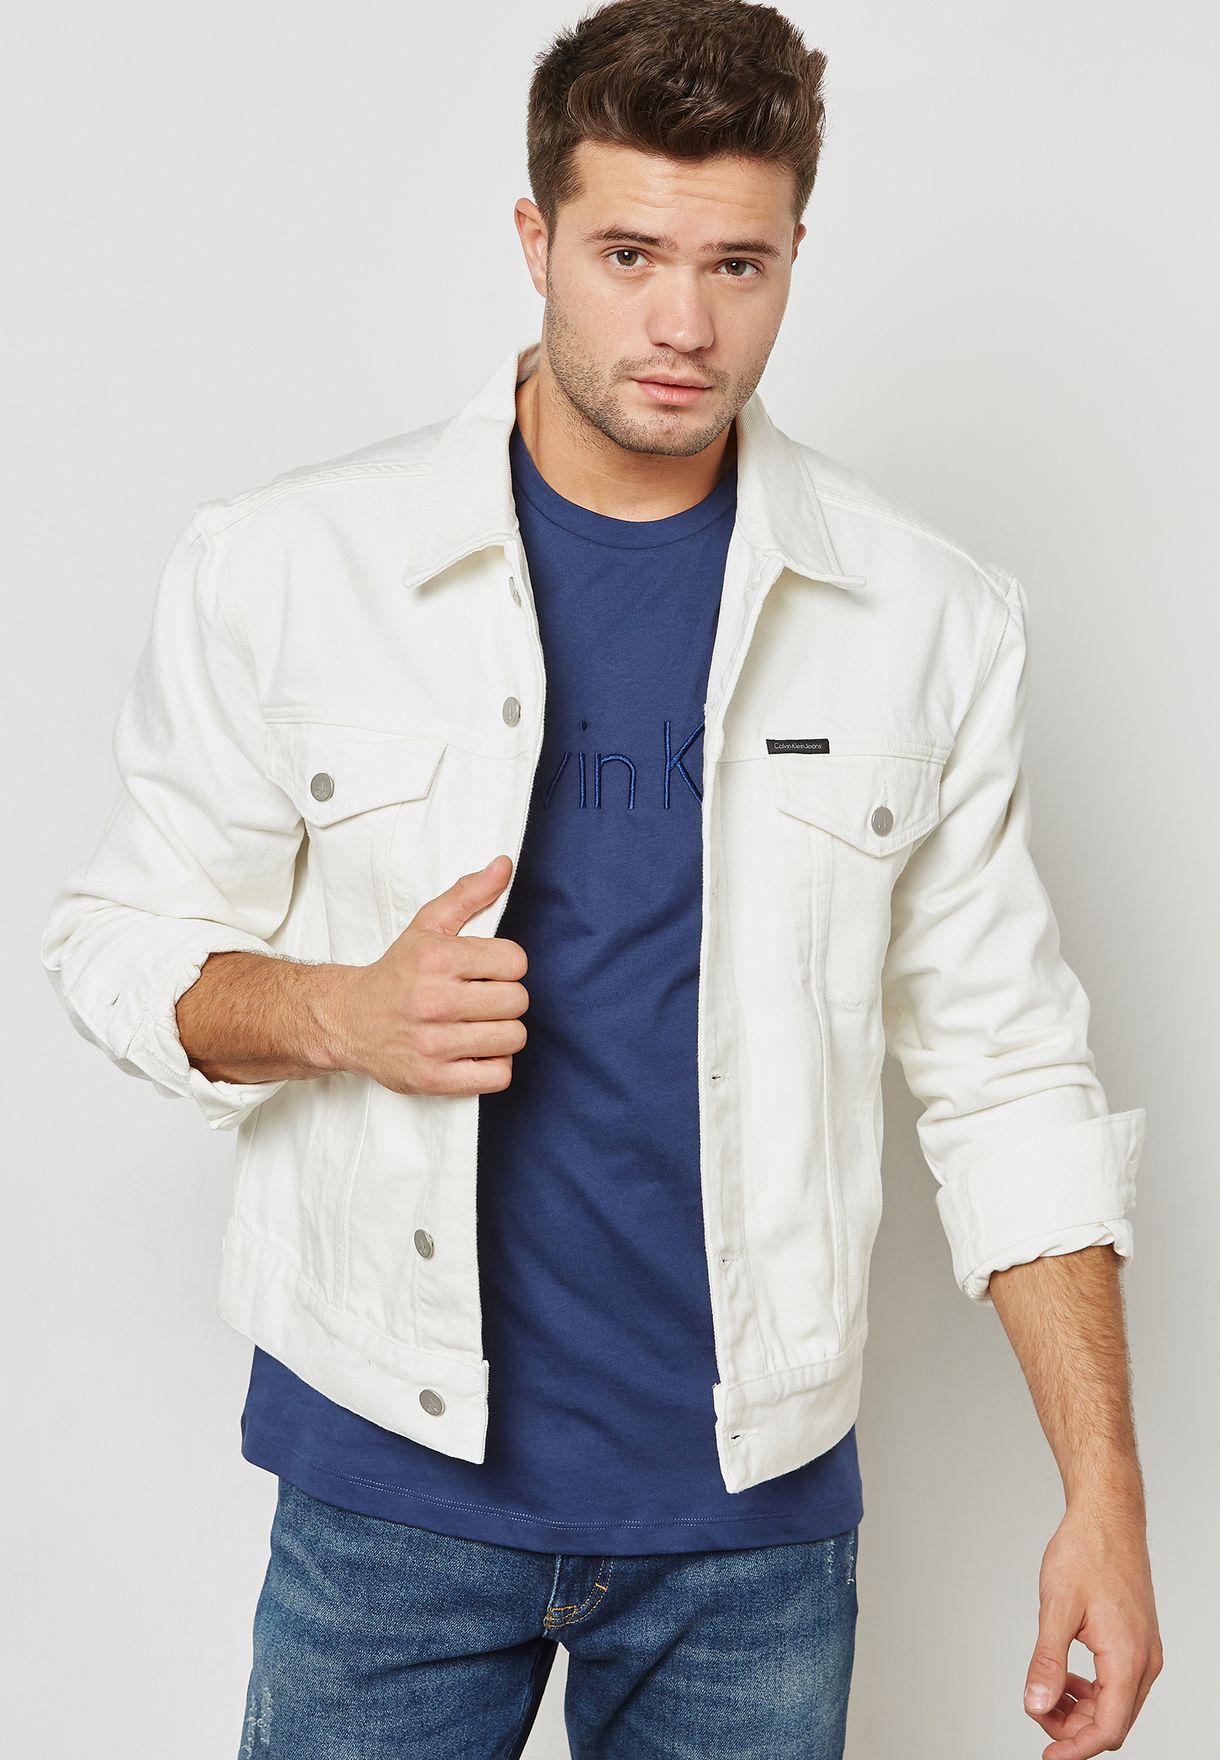 calvin klein white denim jacket